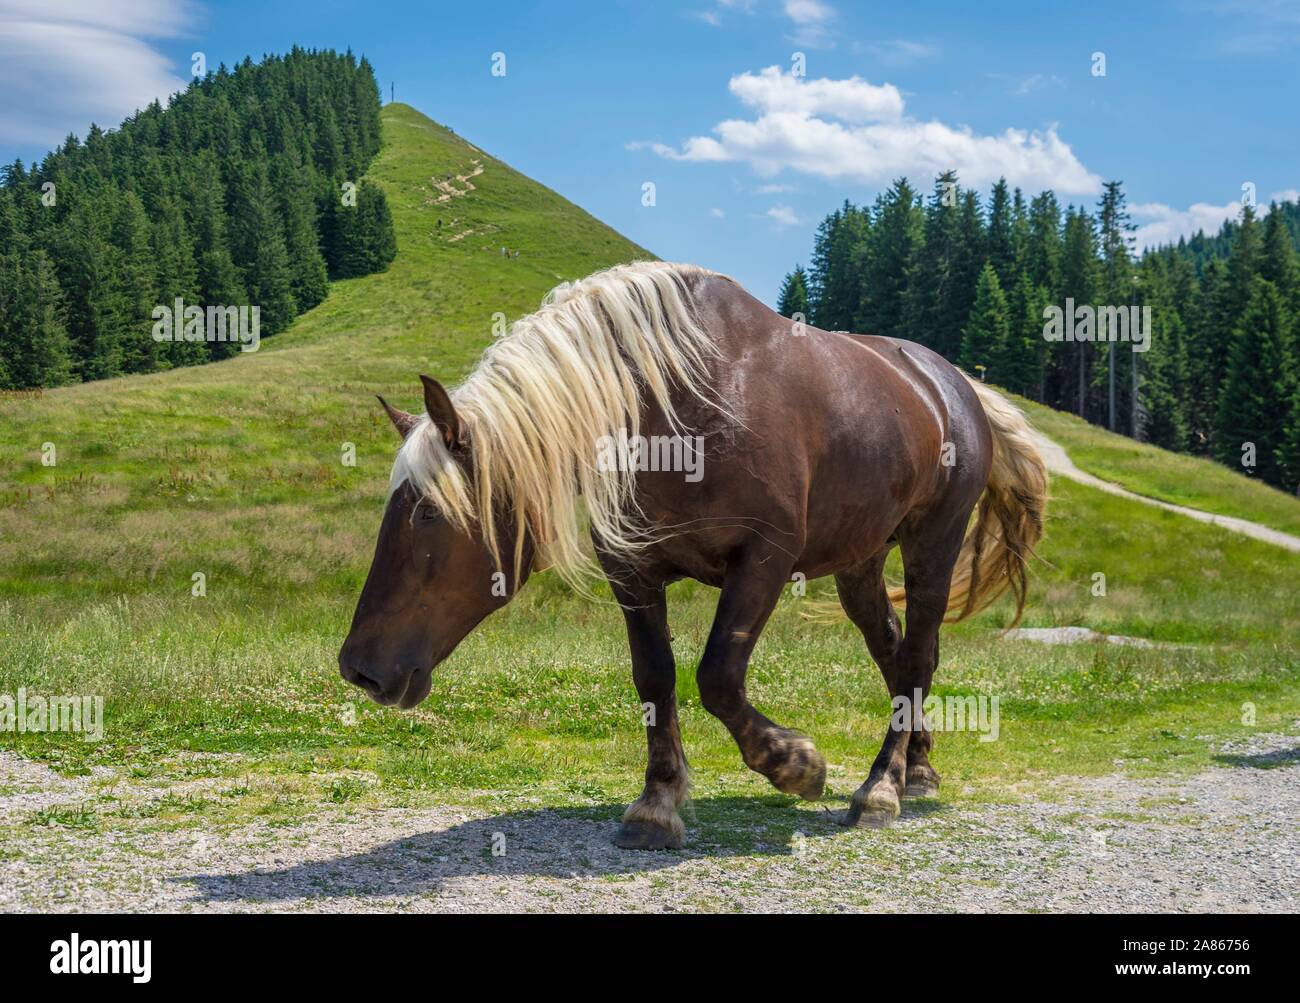 Horse near mountain Bavaria, Germany, Alps wild landscape Stock Photo